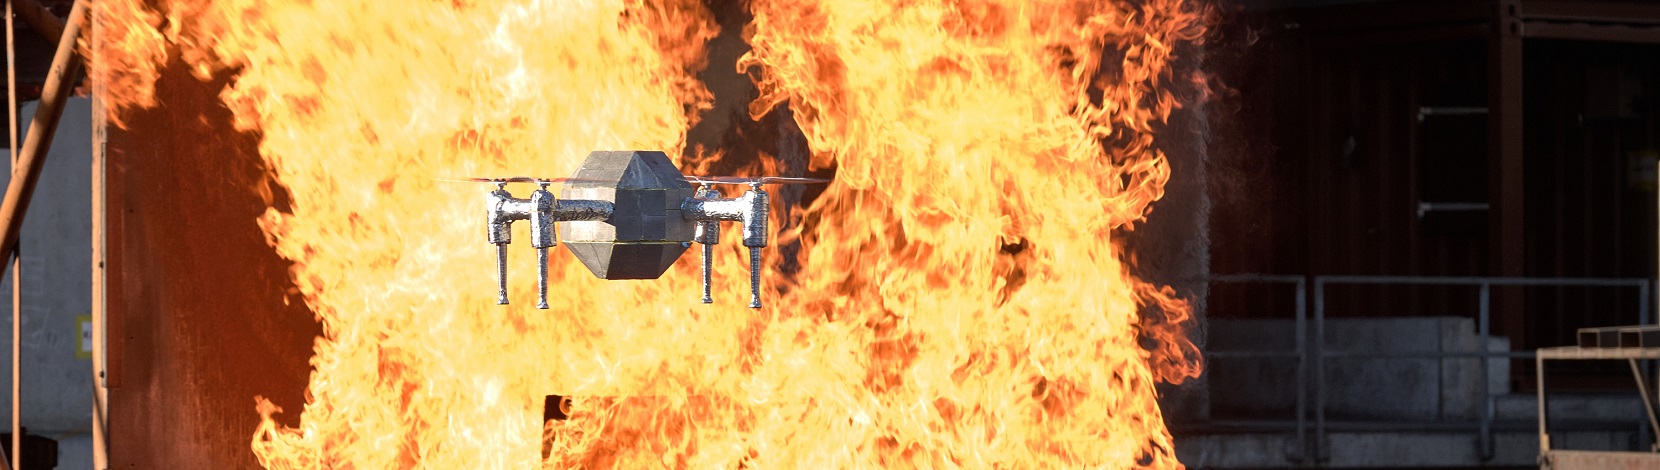 Un drone résistant à la chaleur pour lutter contre les incendies – Electrosuisse